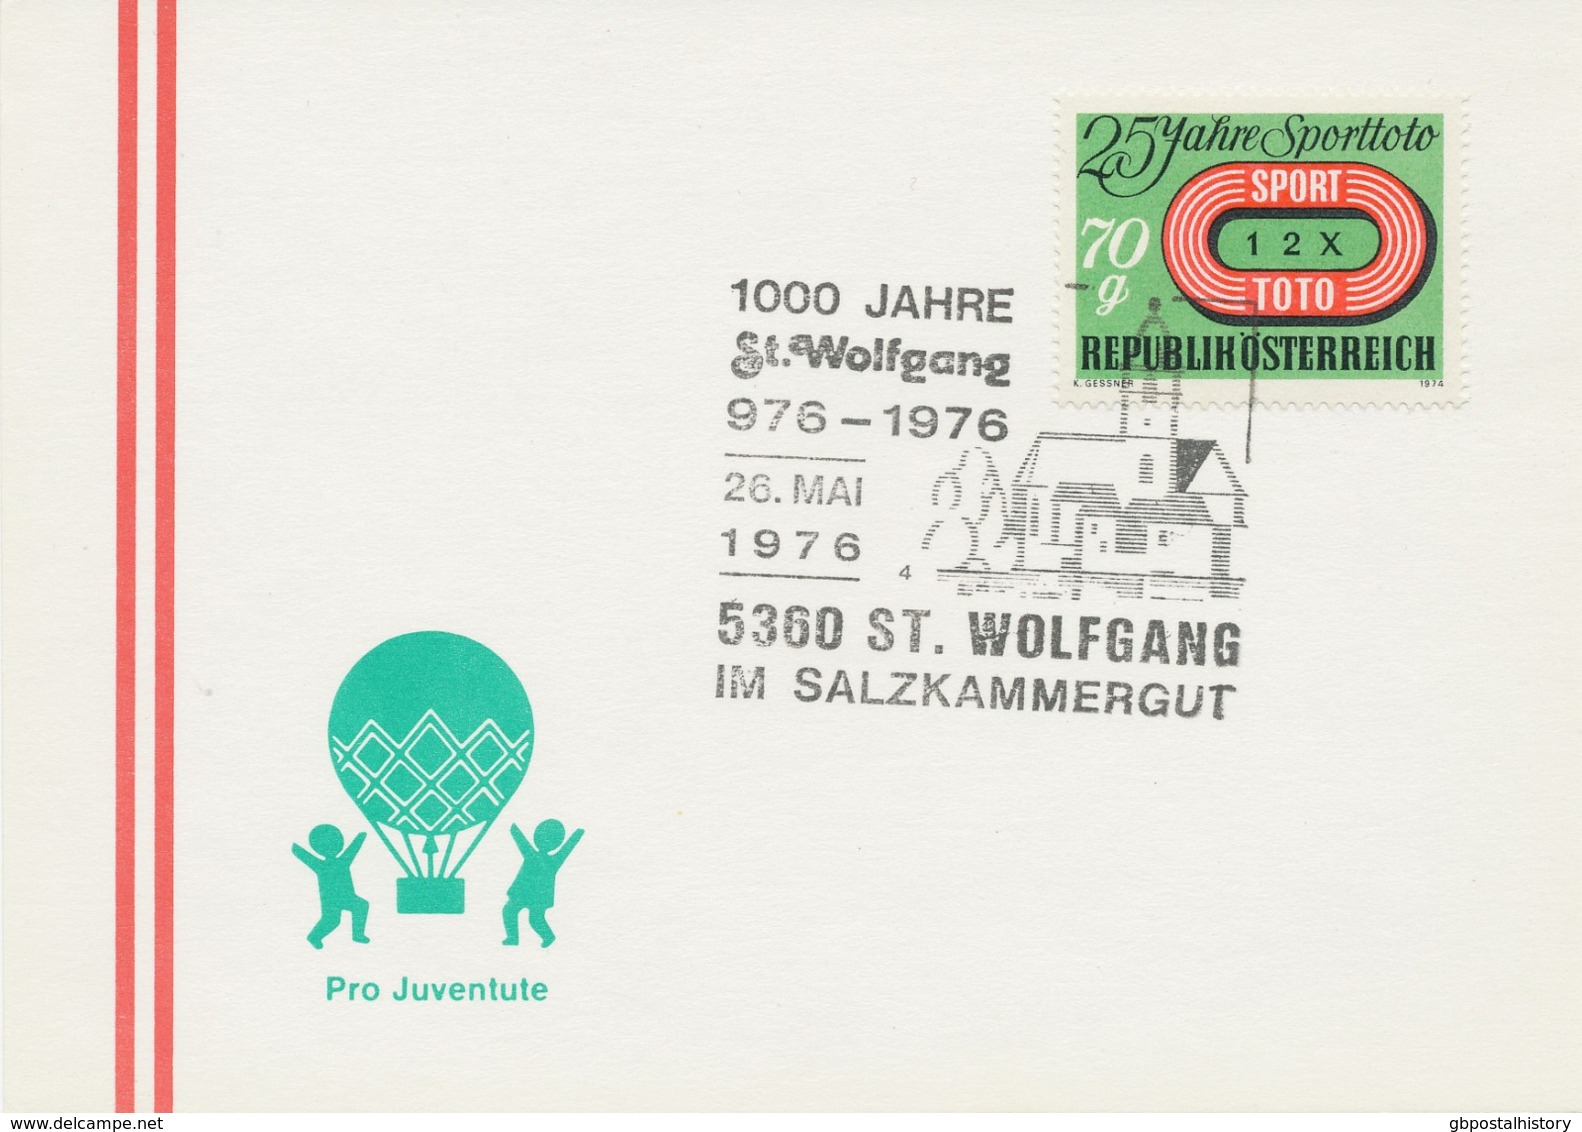 ÖSTERREICH 1976 5360 ST. WOLFGANG IM SALZKAMMERGUT 1000 Jahre St. Wolfgang 976-1976 - Maschinenstempel (EMA)